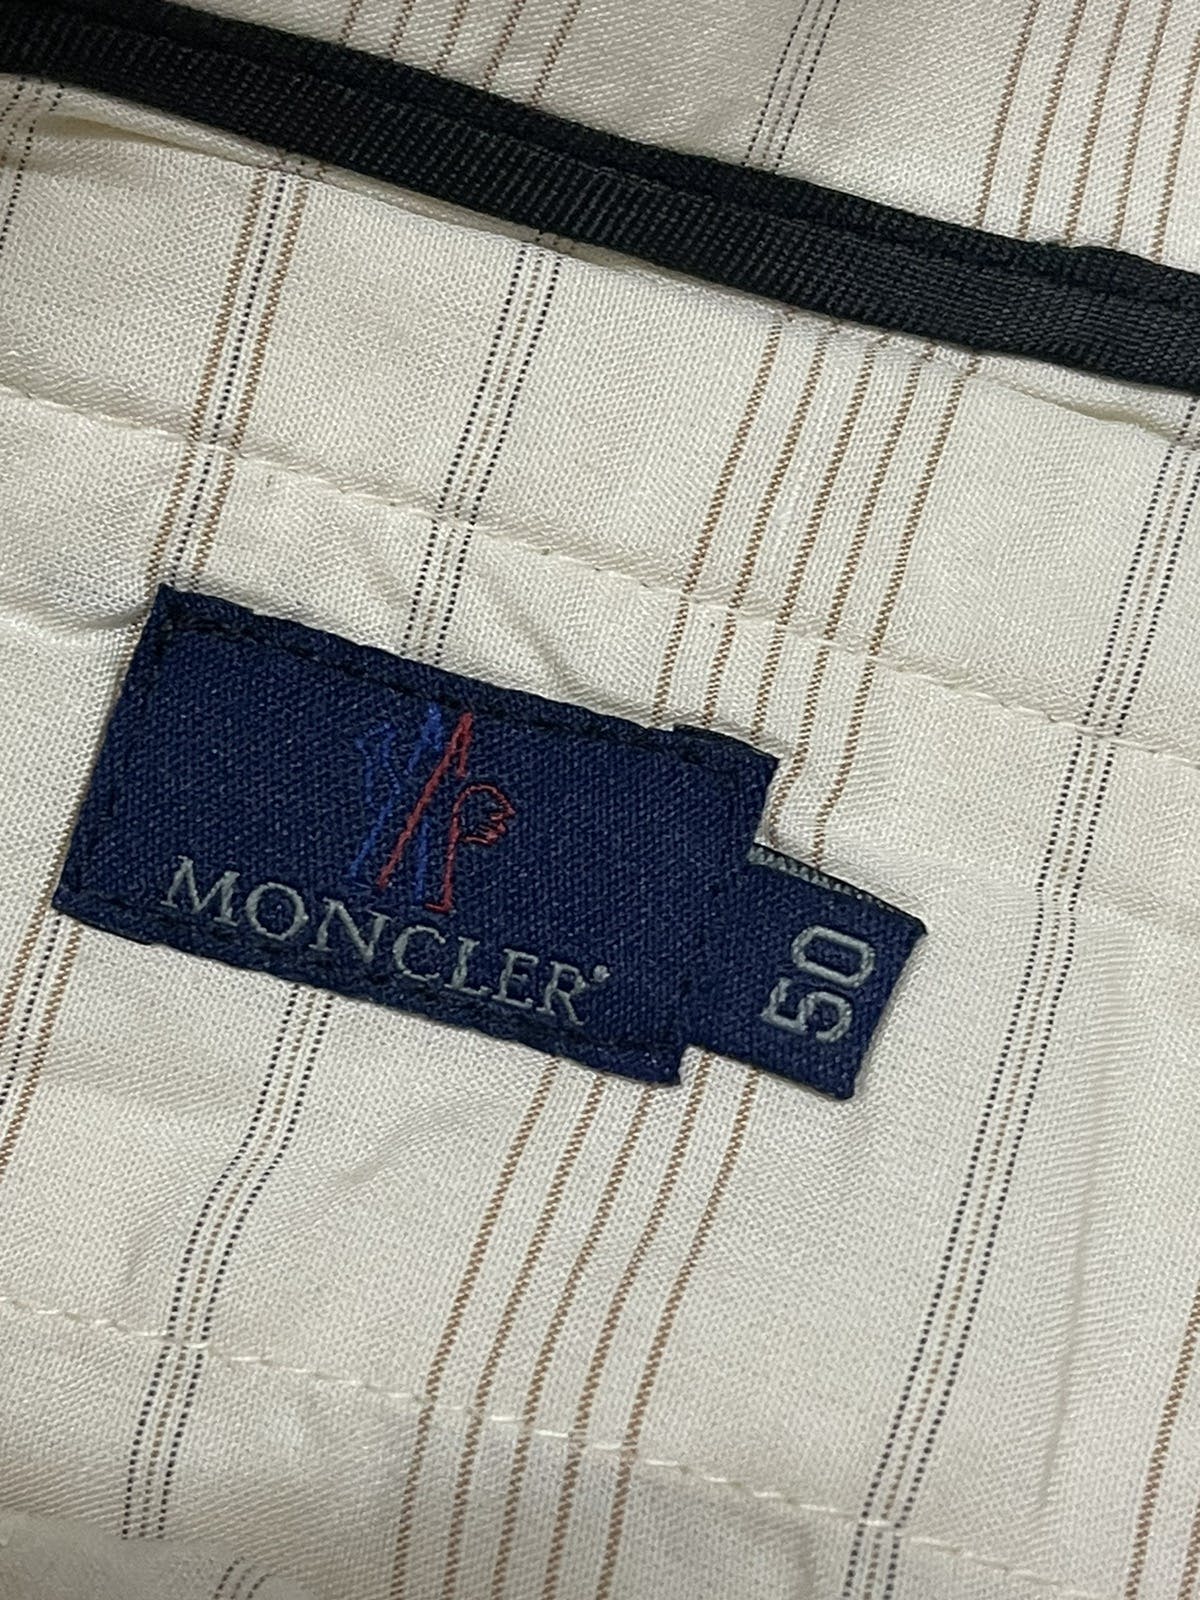 Vintage Moncler cotton wide pants - 6